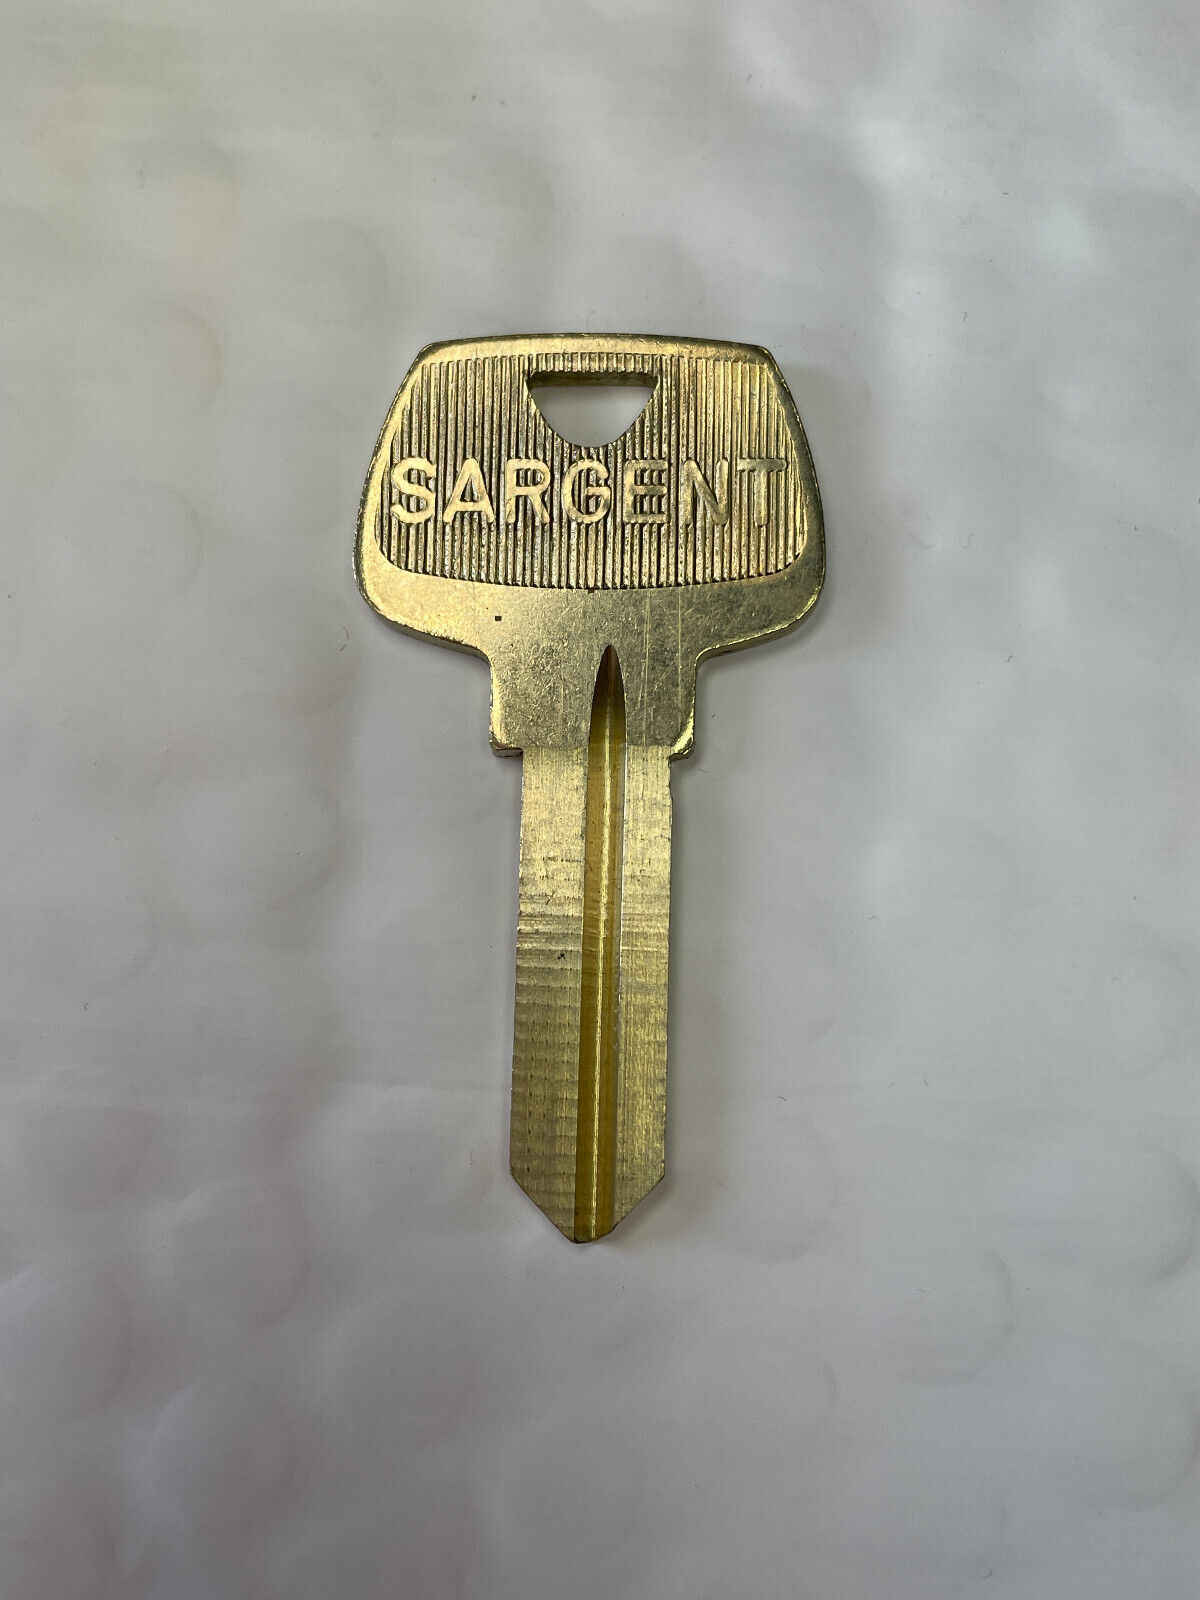 Sargent Original Key Blank 265U, 5-Pin, Ilco #\'s 1010U, O1010, & S4, NOS